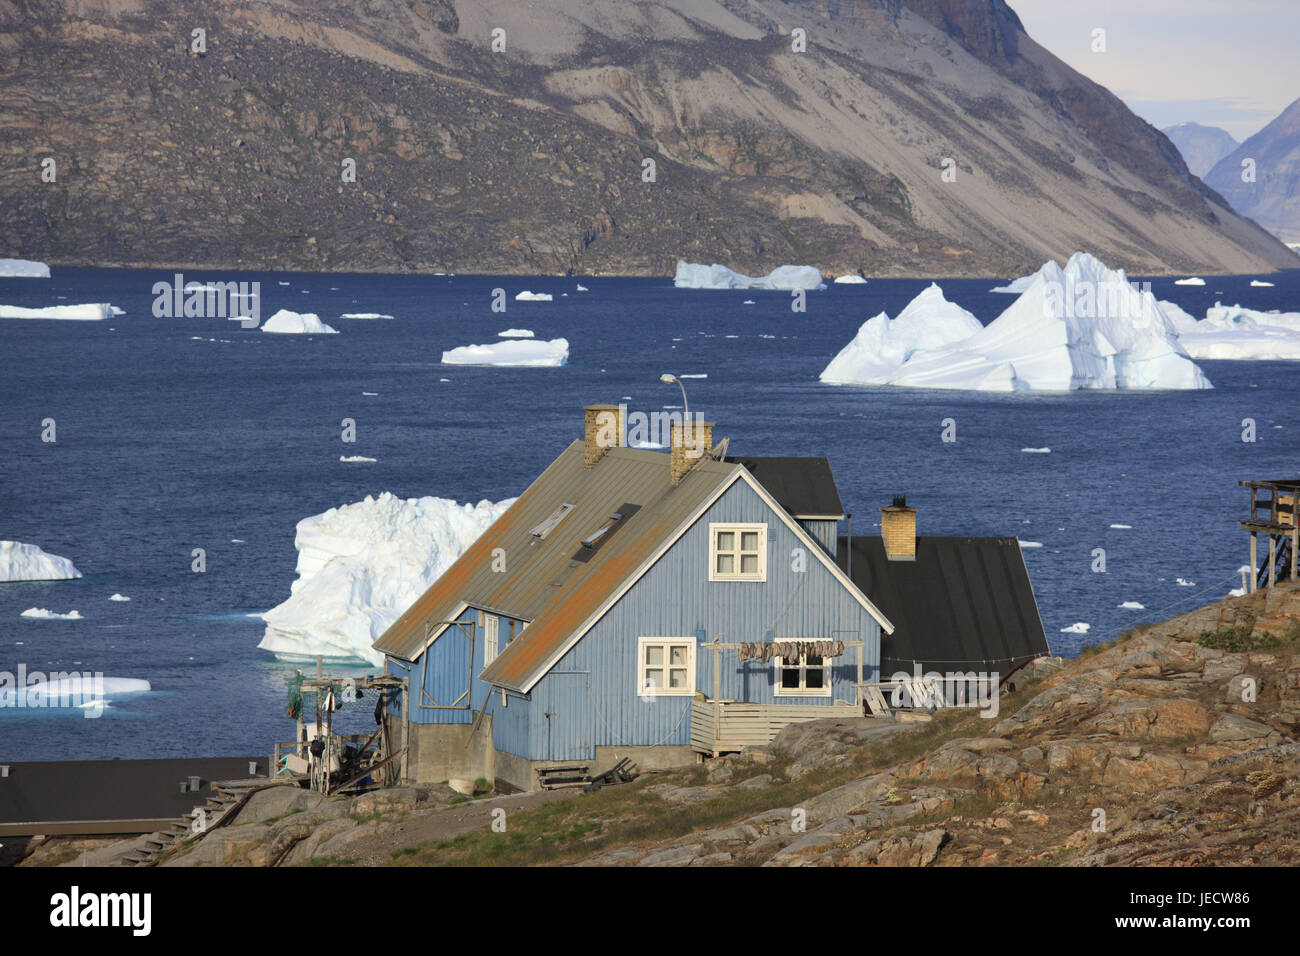 La Groenlandia, Uummannaq, Fjord, iceberg, bile costa, case di legno, nel nord della Groenlandia, destinazione, scenario, sul mare Artico, ghiaccio, ghiacciaio, float, paesaggi costieri, case, case, costa, fuori, deserte, liquidazione, Foto Stock